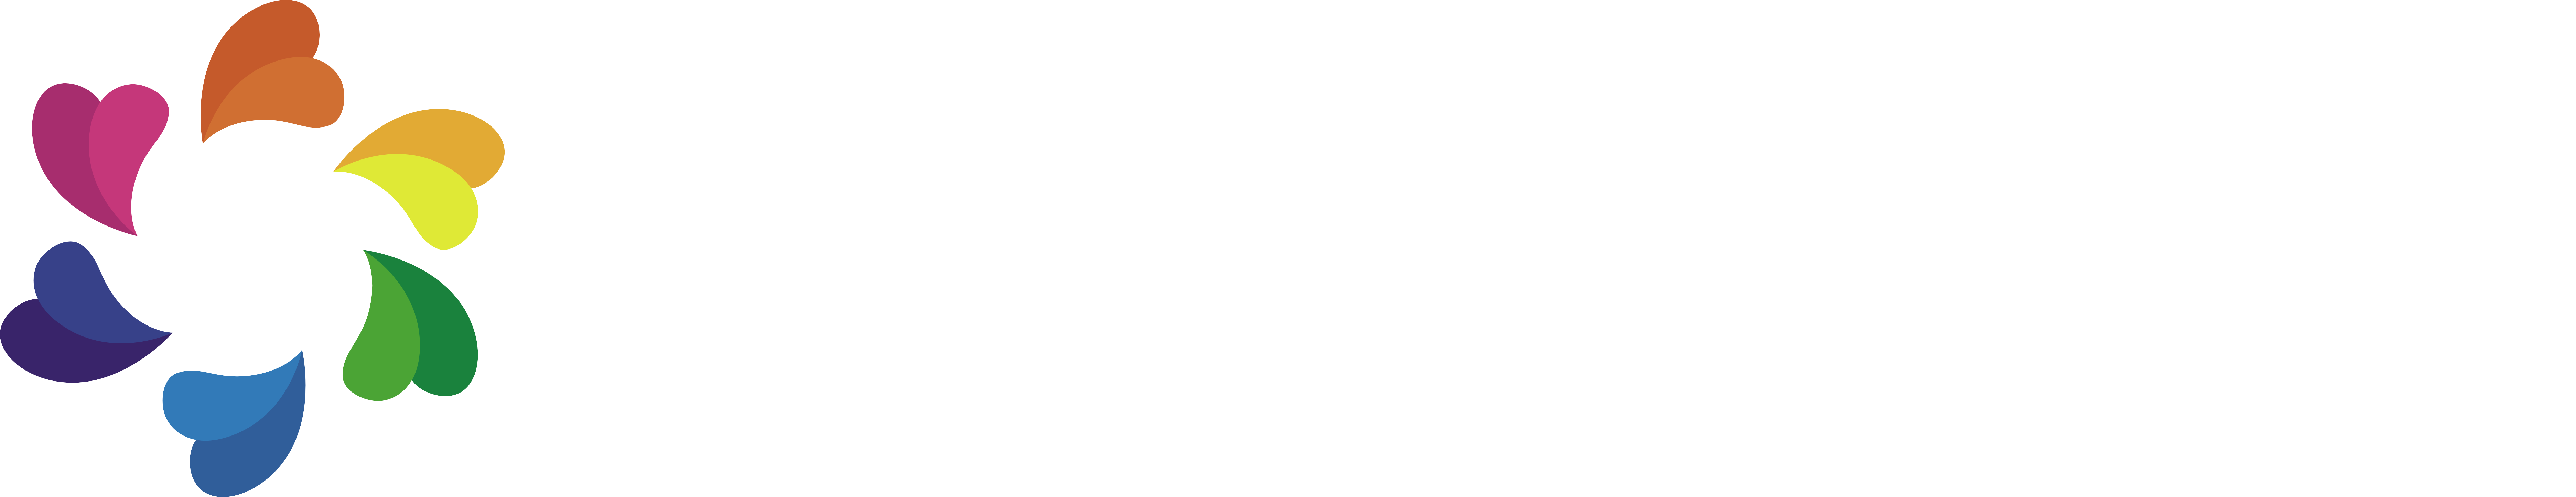 东华大学logo